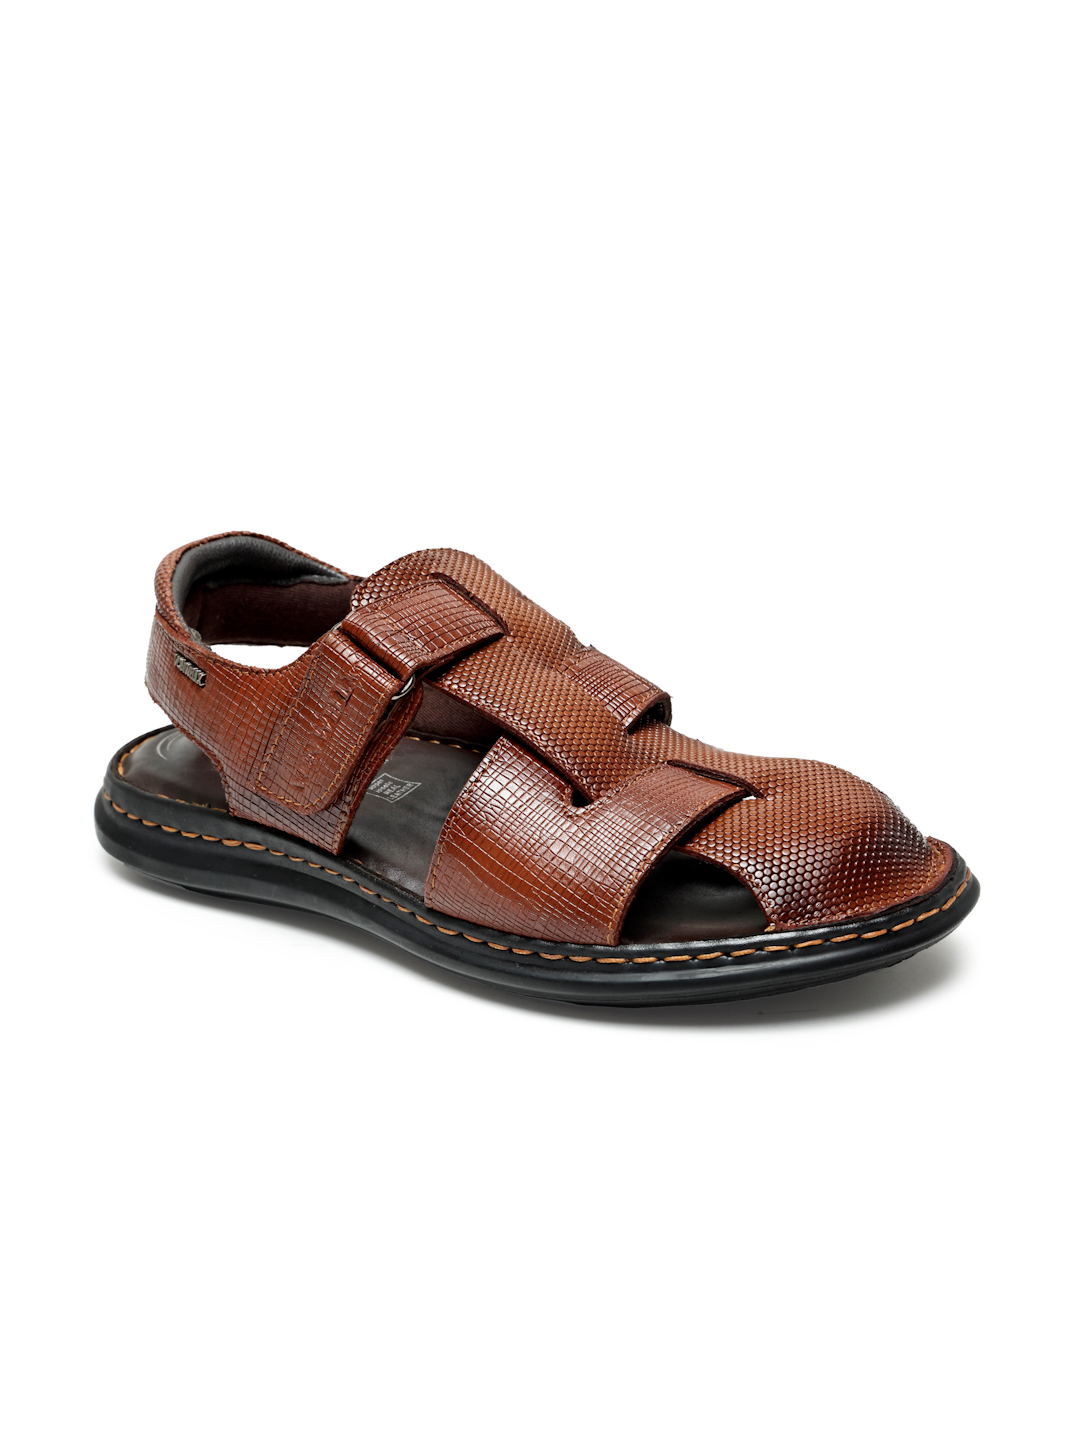 Buy Von Wellx Germany Comfort Men's Tan Sandals Morgen Online in Dammam